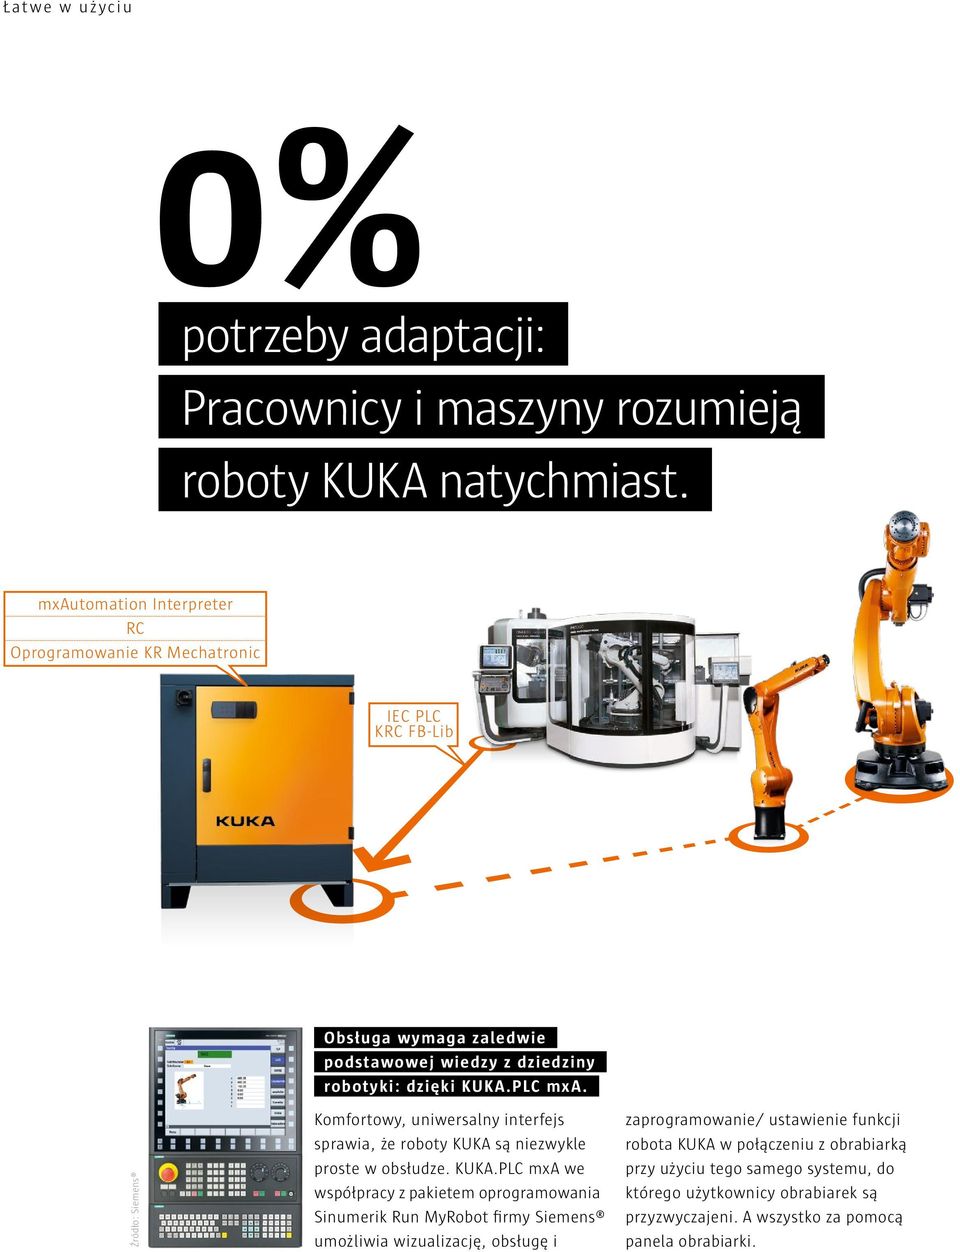 Źródło: Siemens Komfortowy, uniwersalny interfejs sprawia, że roboty KUKA 